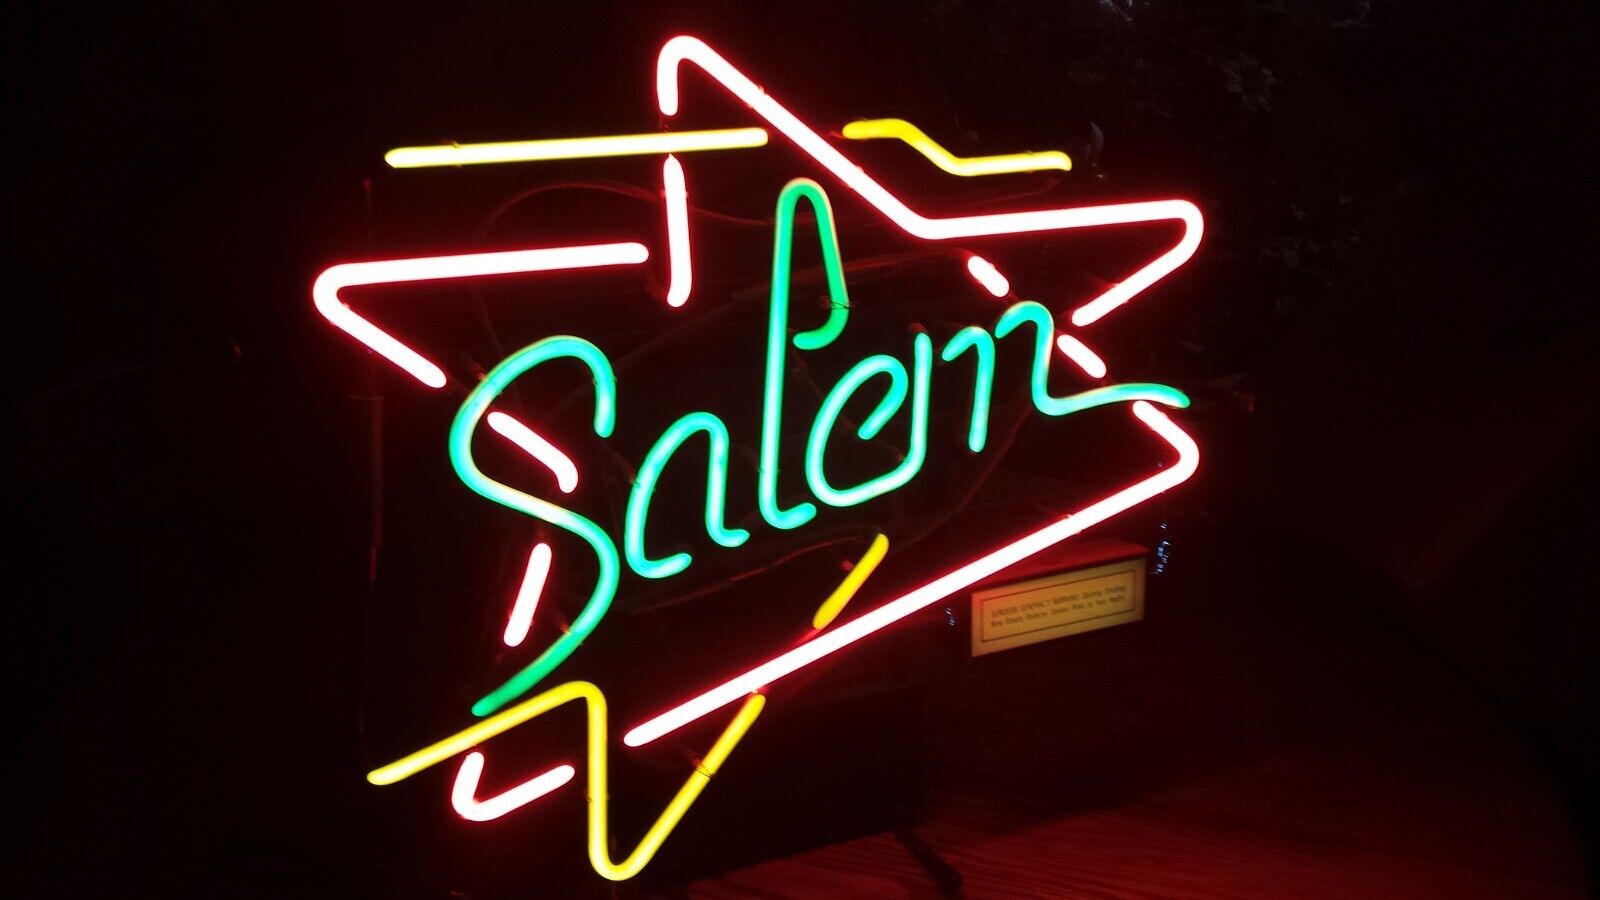 VINTAGE Salem Cigarette Neon Bar Light • Tested & Works Great ONE OWNER